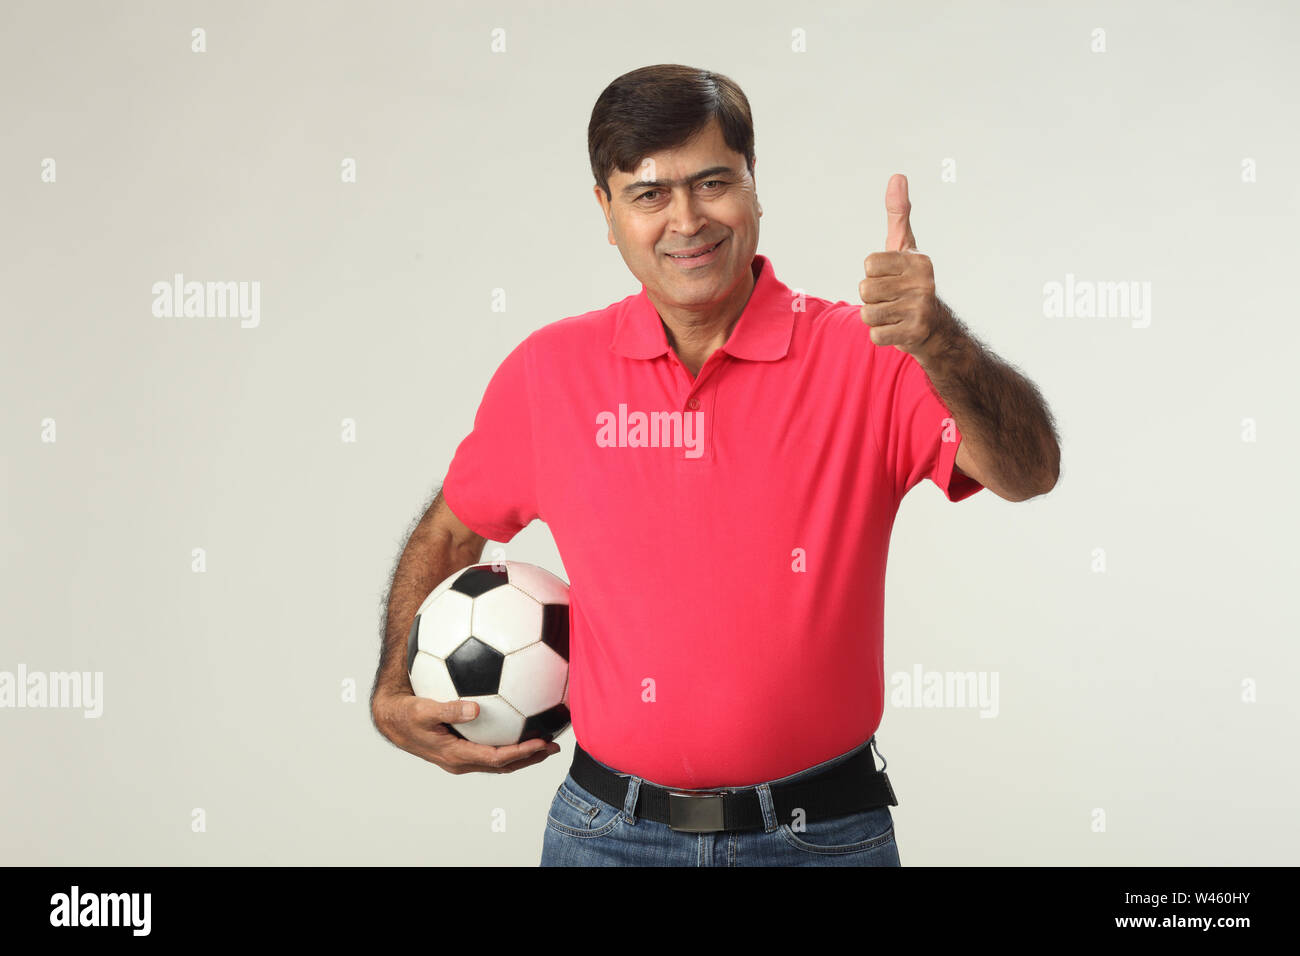 Porträt eines Mannes, der einen Fußball hält und zeigt Daumen hoch Stockfoto